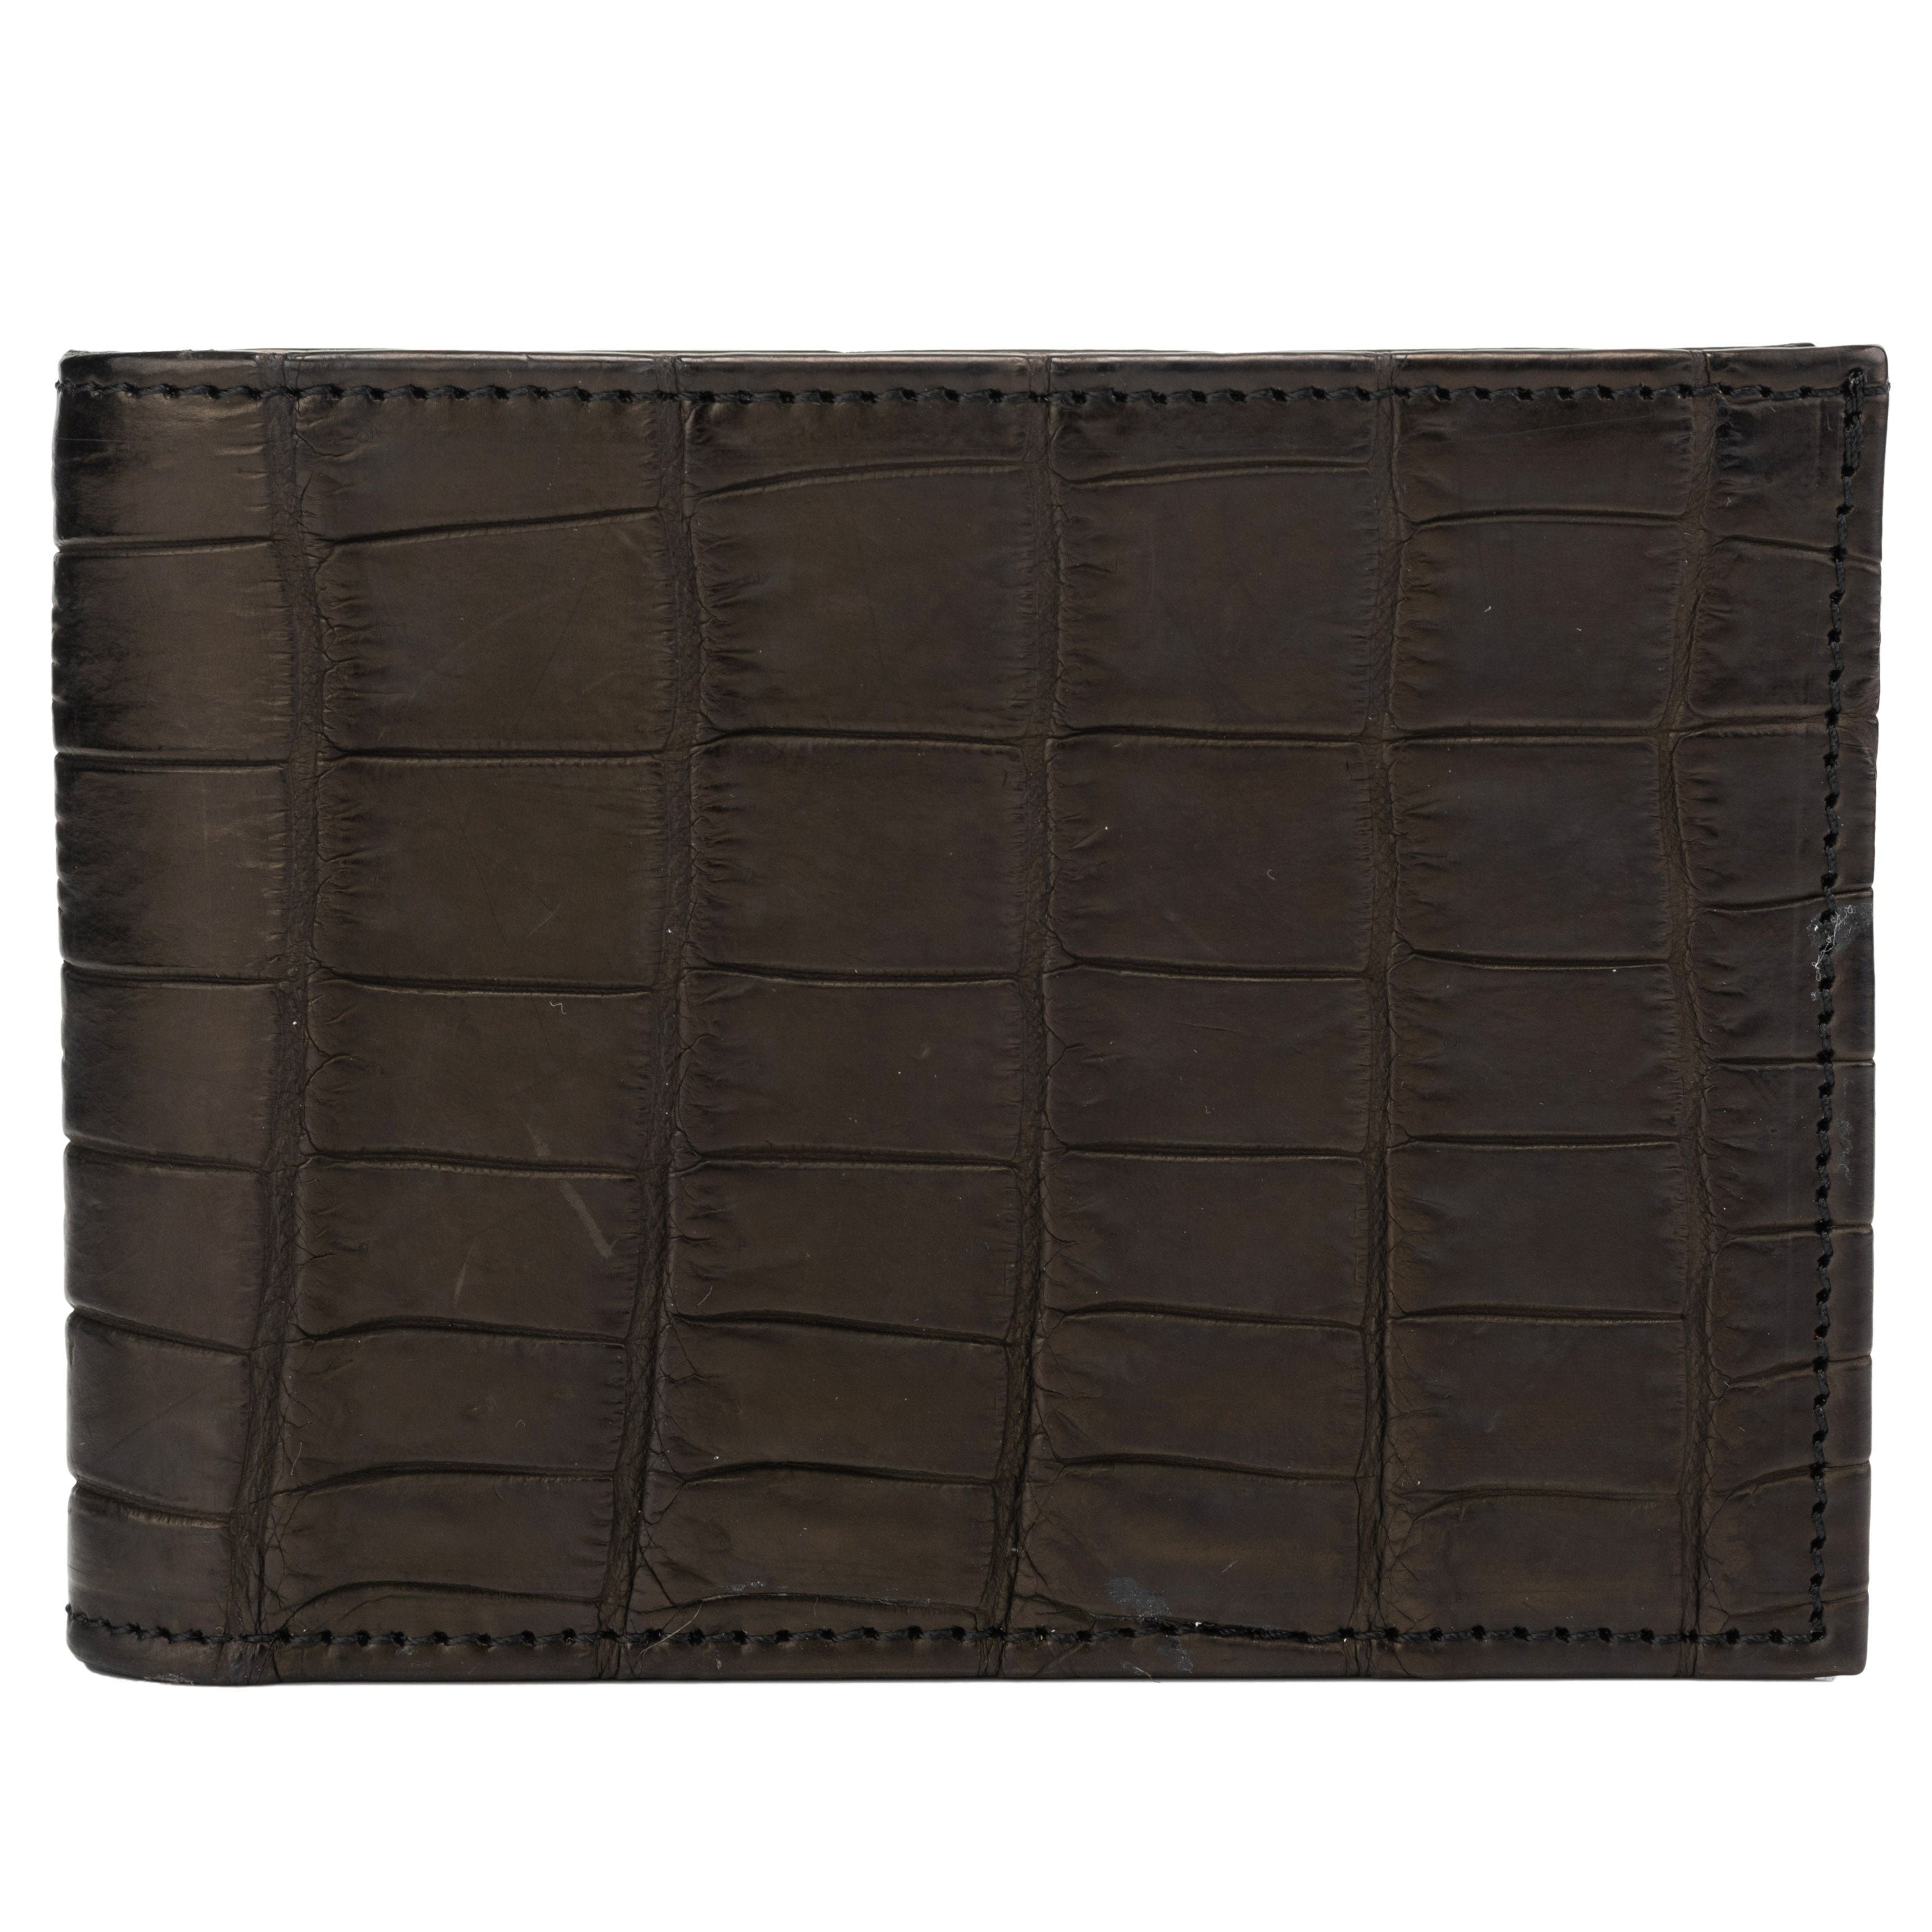 Black wallet for man, in calfskin – Kiton Europe